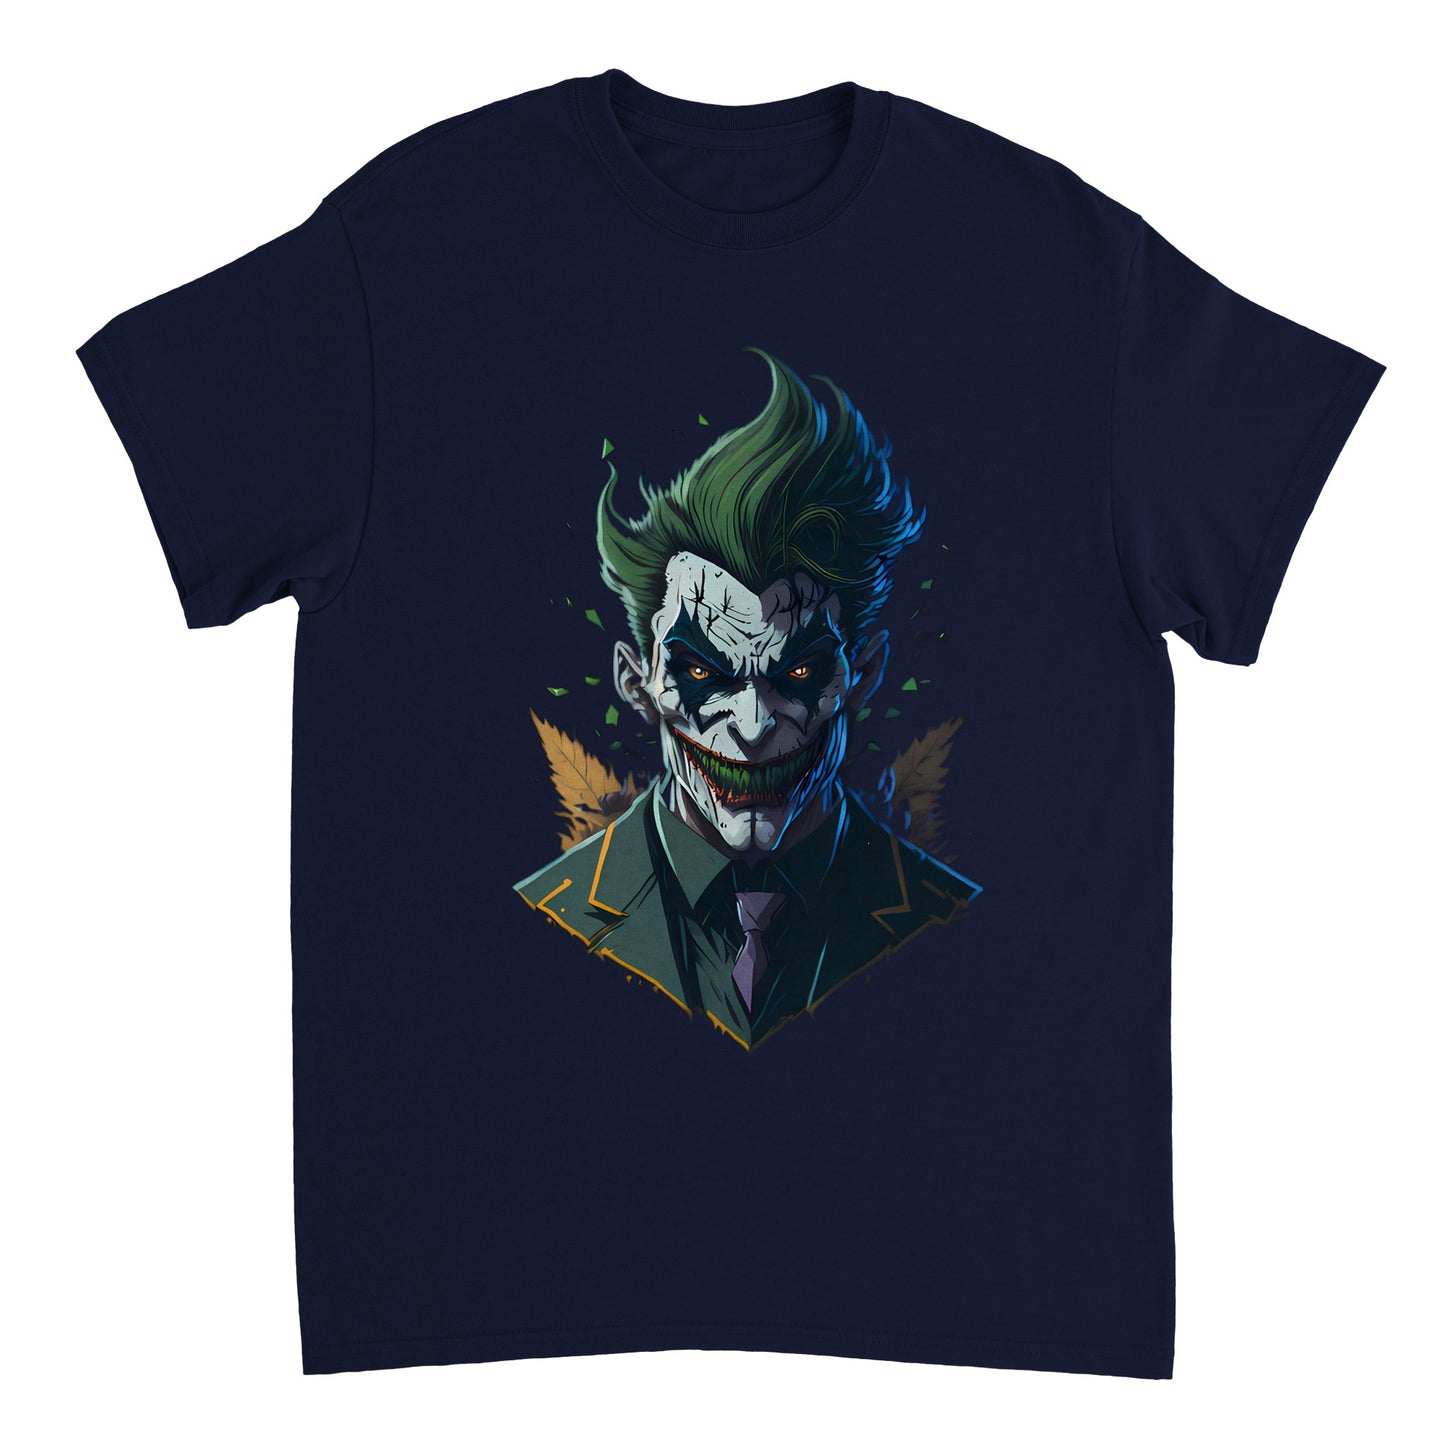 The Joker Fan Artwork Heavyweight Unisex Crewneck T-shirt